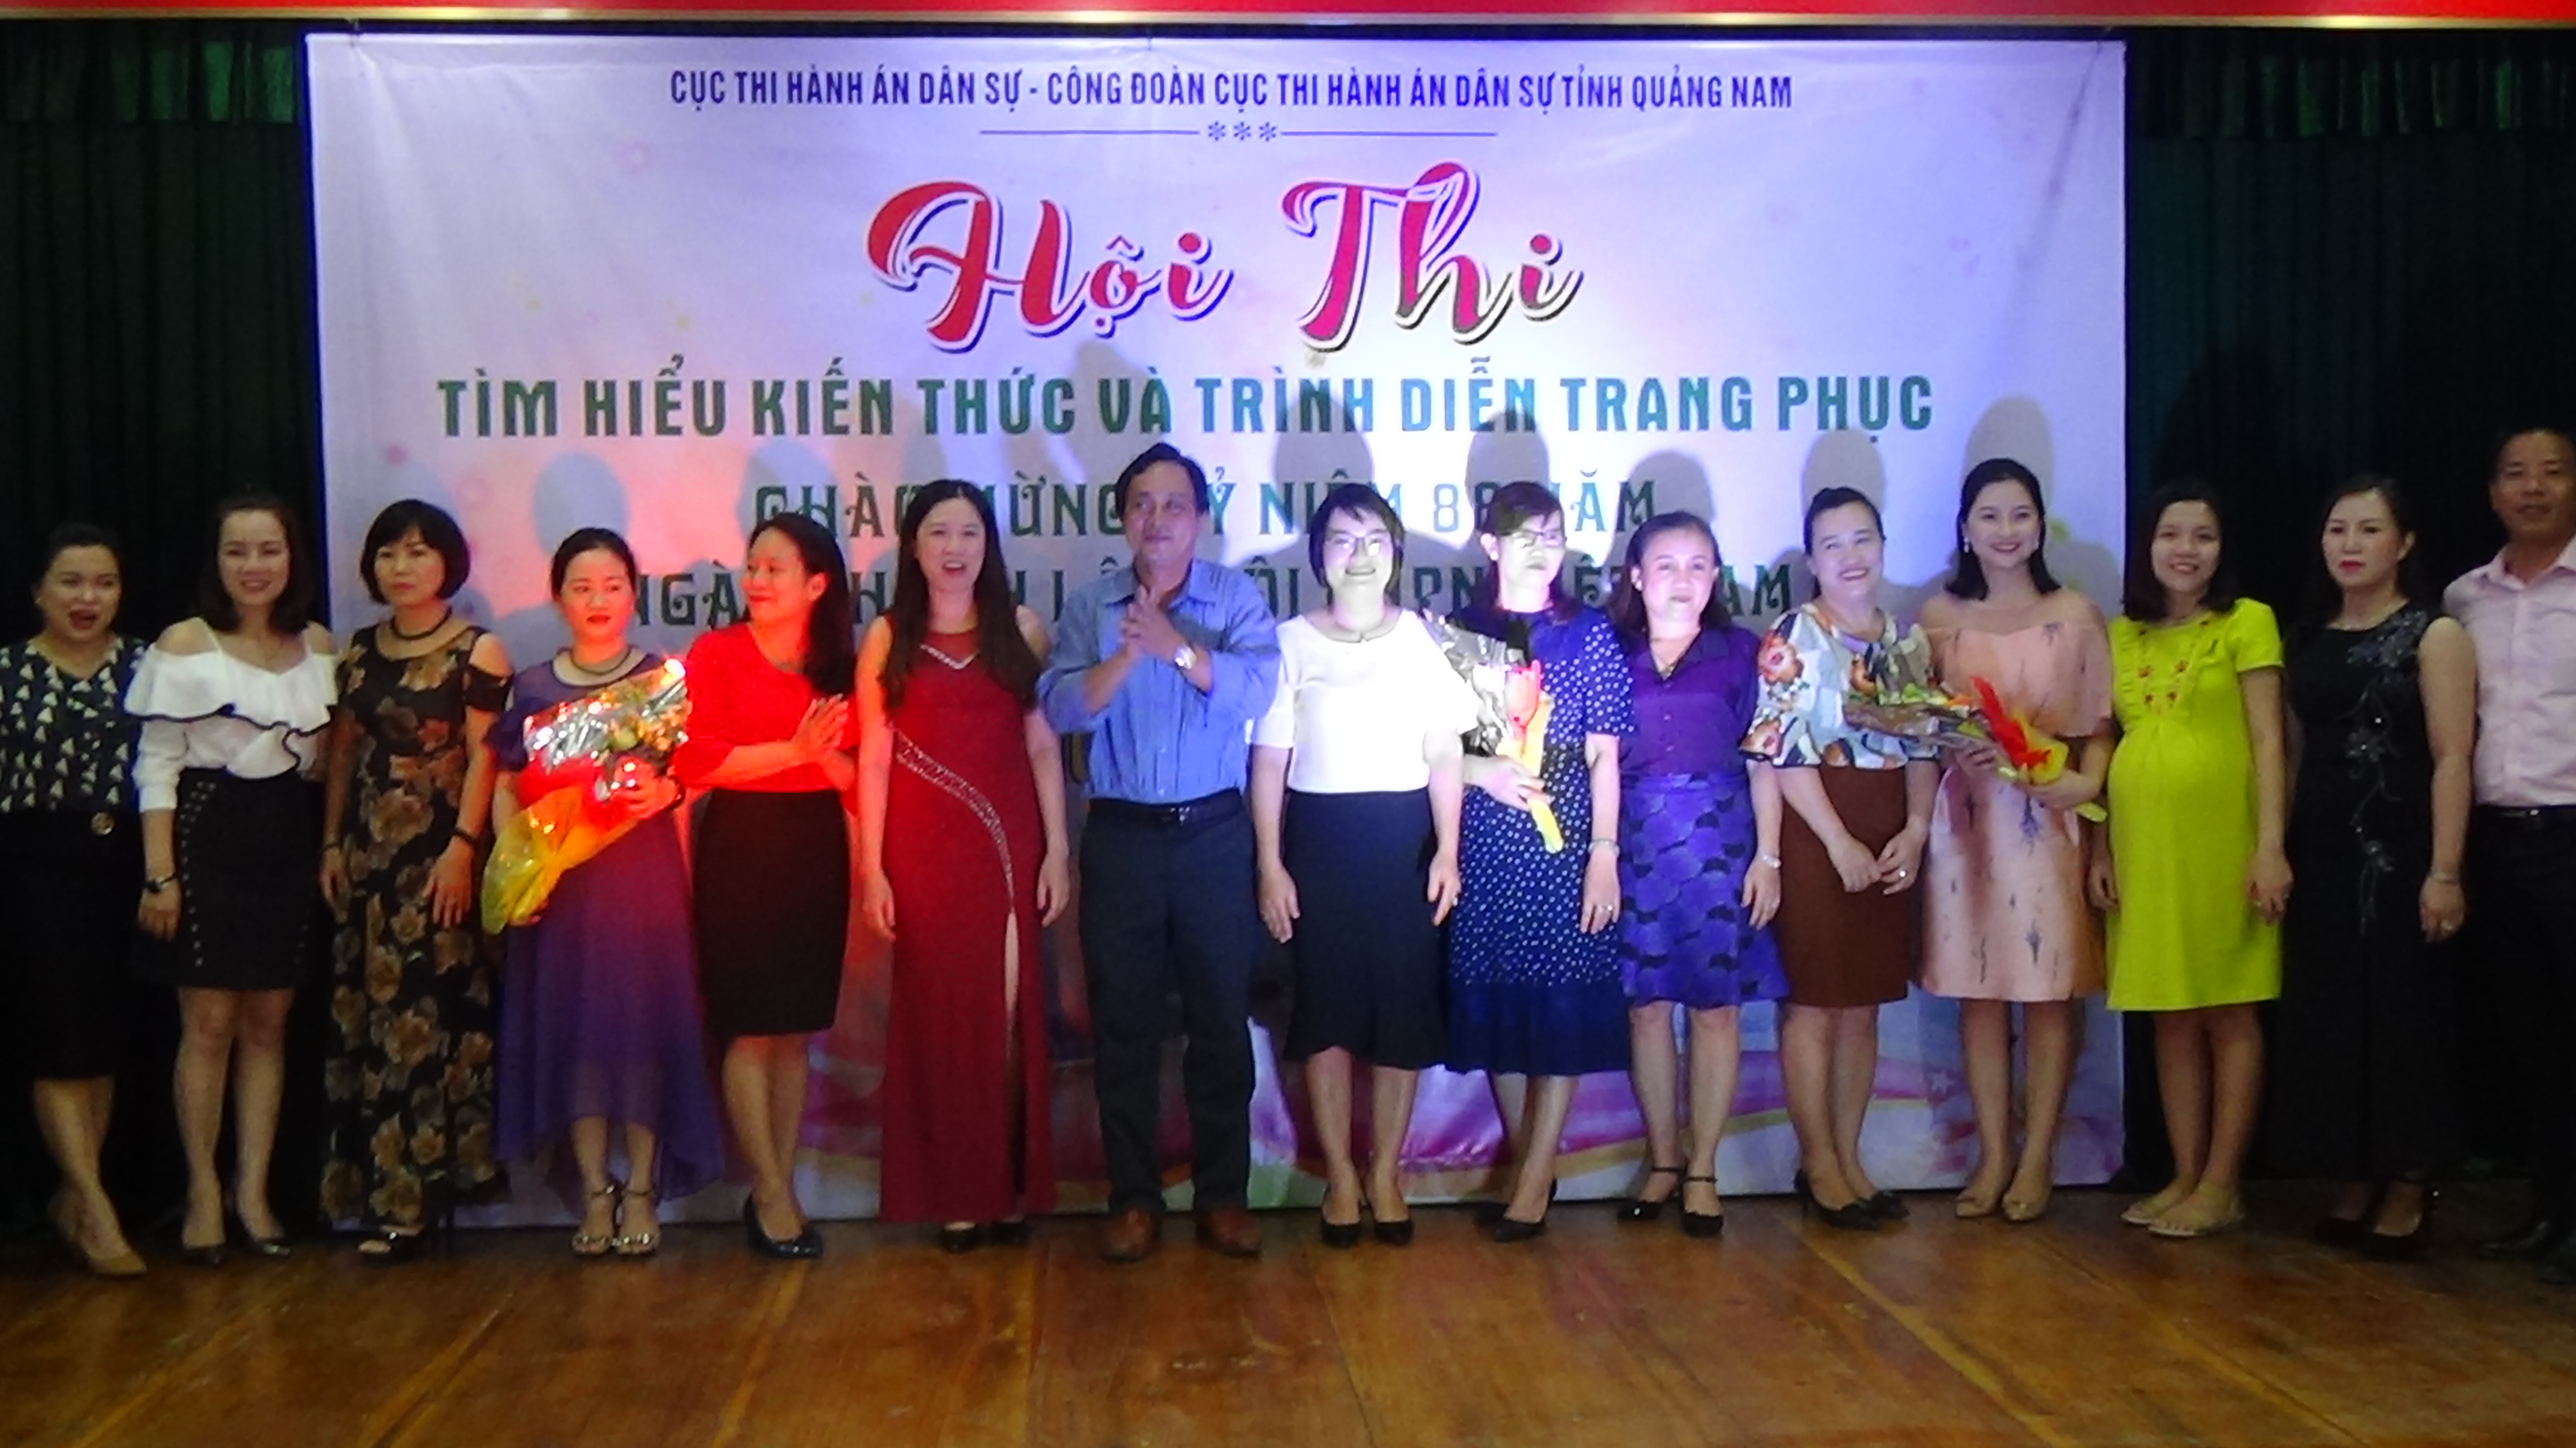 Hội thi “Tìm hiểu kiến thức và trình diễn trang phục” chào mừng kỷ niệm 88 năm ngày thành lập Hội Liên hiệp Phụ nữ Việt Nam (20/10/1930 – 20/10/2018) và kỷ niệm Ngày Phụ nữ Việt Nam 20/10